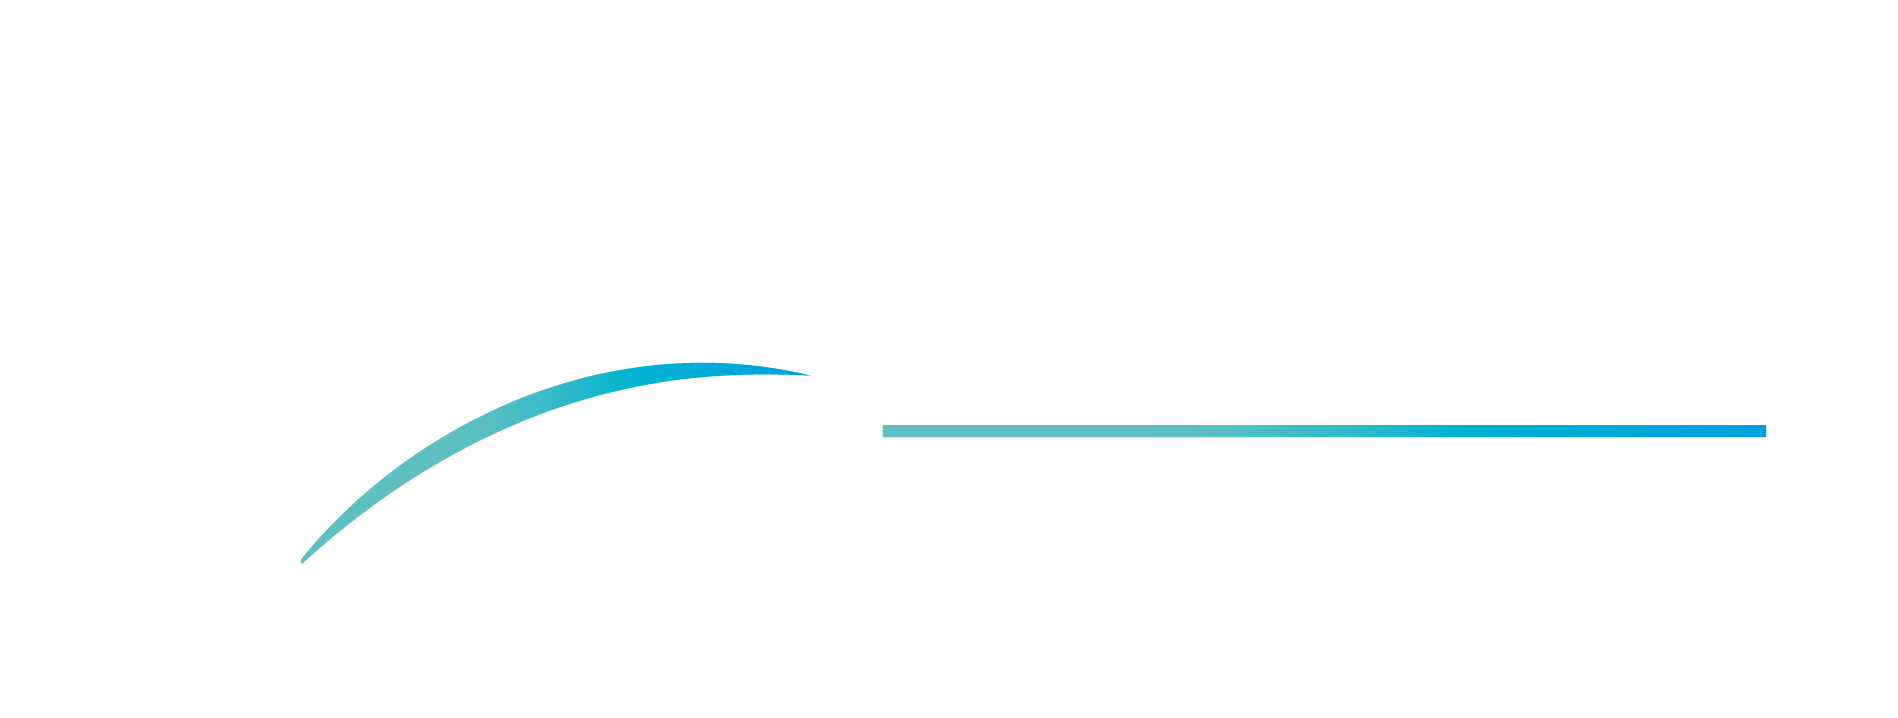 CEP Batiment